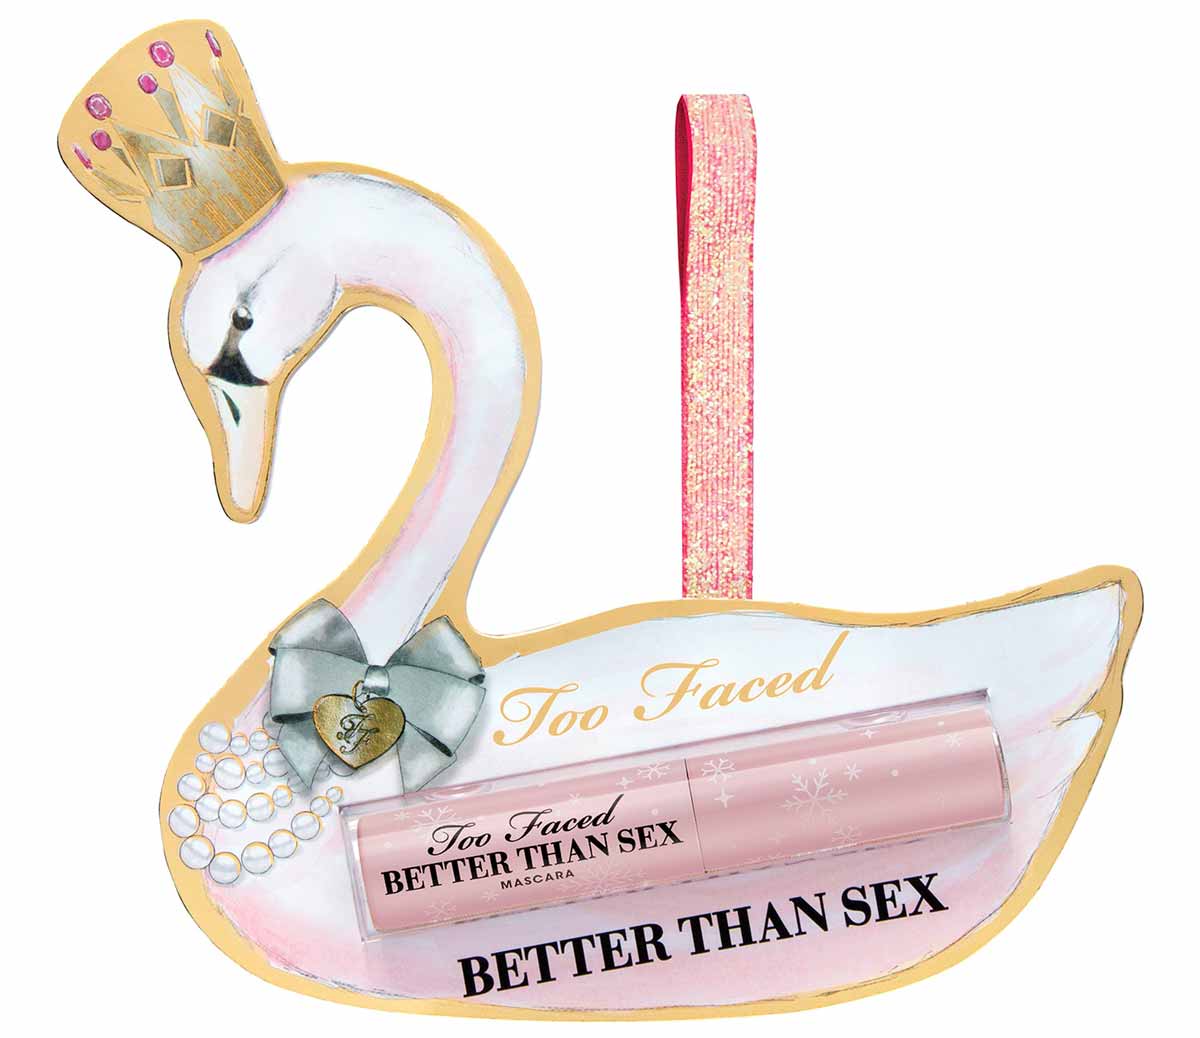 Better Than Sex Mascara Ornament